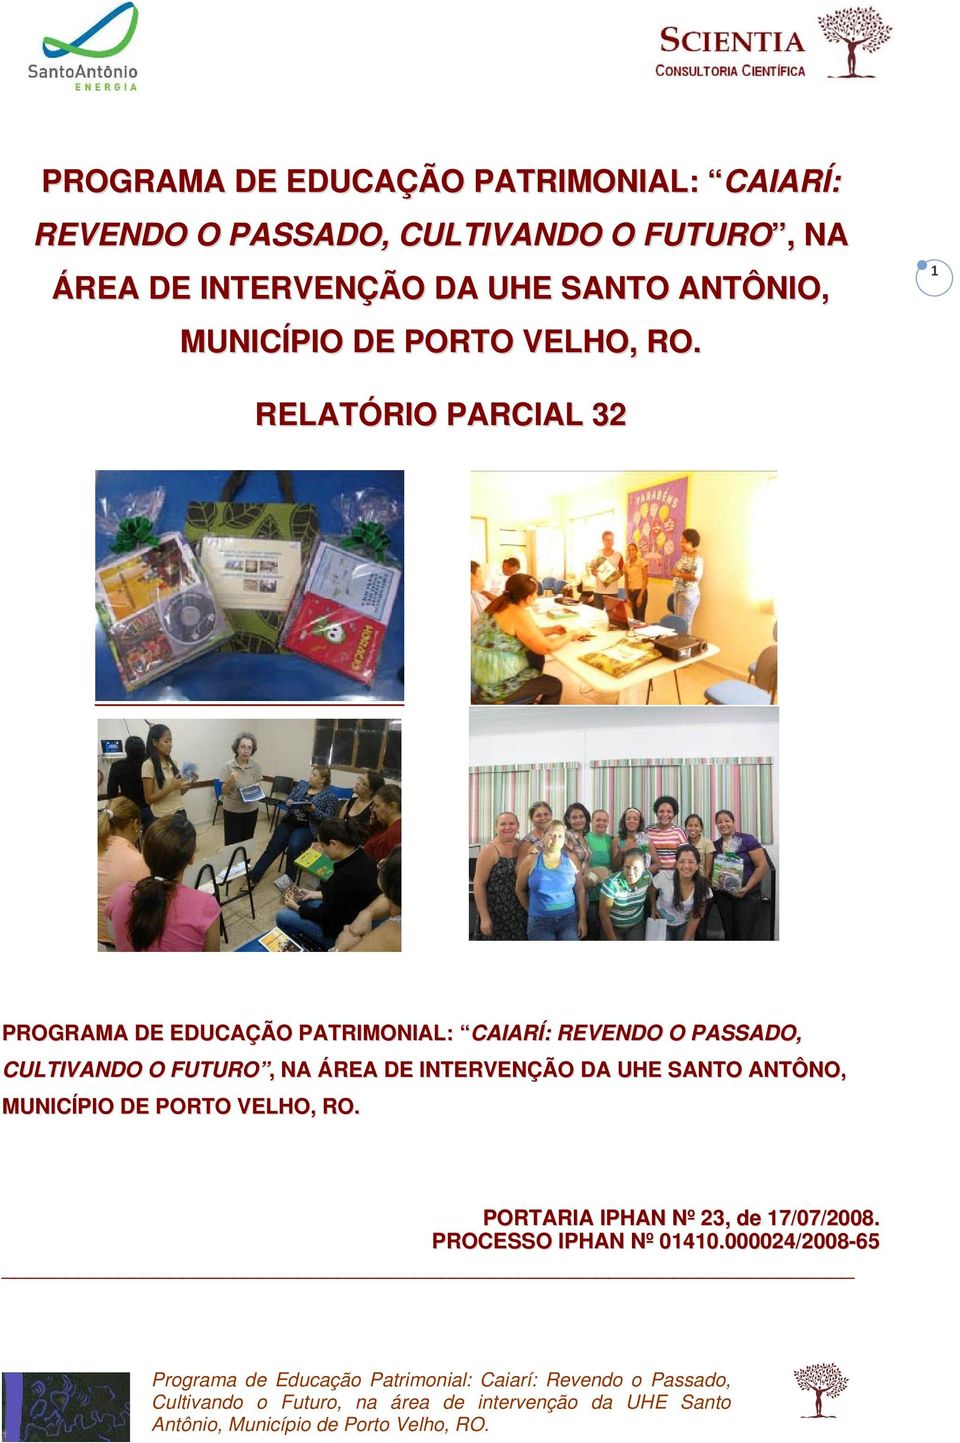 1 RELATÓRIO PARCIAL 32  INTERVENÇÃO DA UHE SANTO ANTÔNO, MUNICÍPIO DE PORTO VELHO, RO.